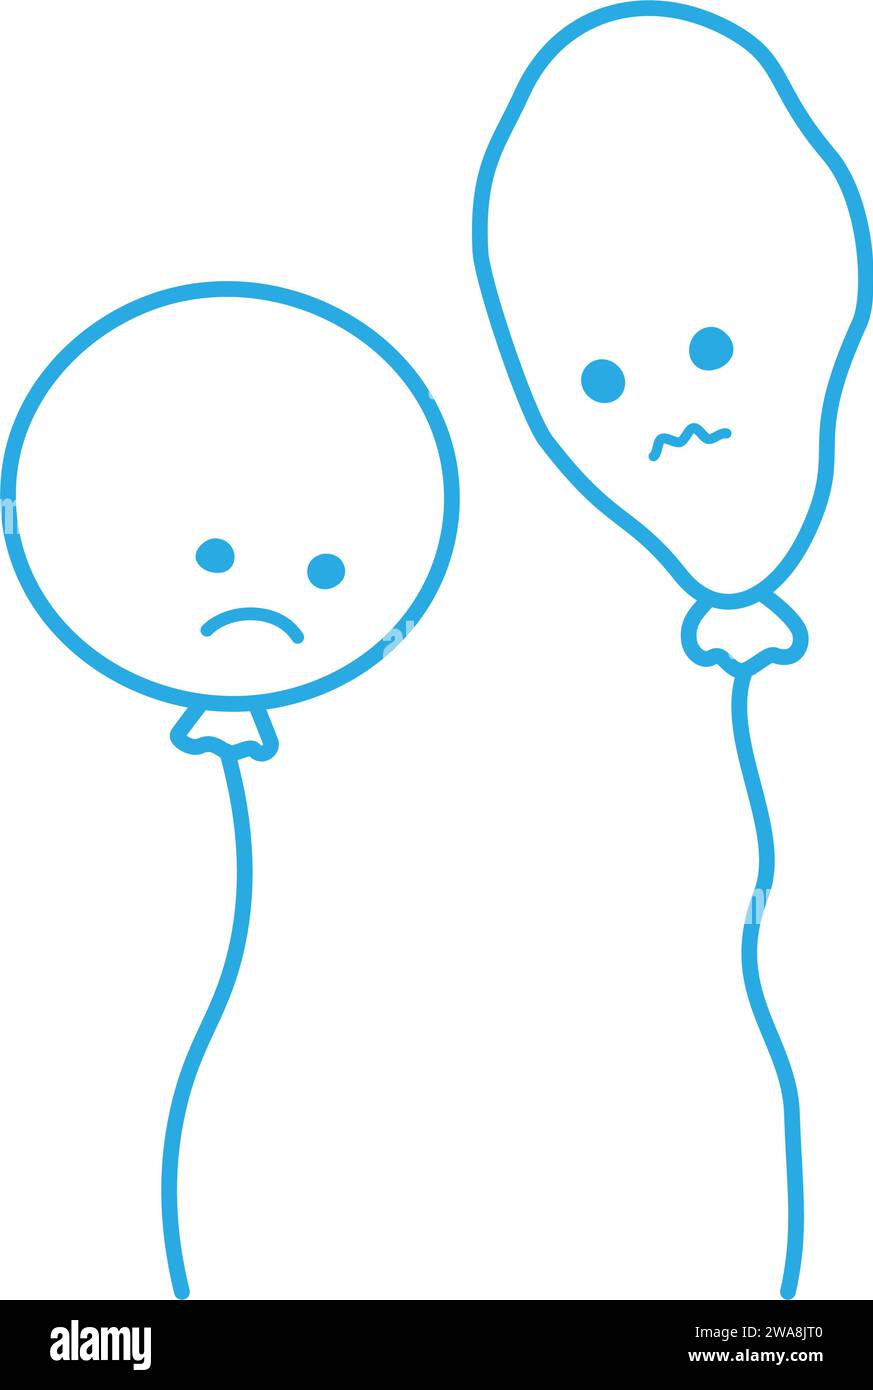 Dessin de contour de deux ballons au visage triste en bleu tendance. Éléments dessinés à la main pour de nombreuses utilisations. Isoler. EPS. Illustration vectorielle Illustration de Vecteur